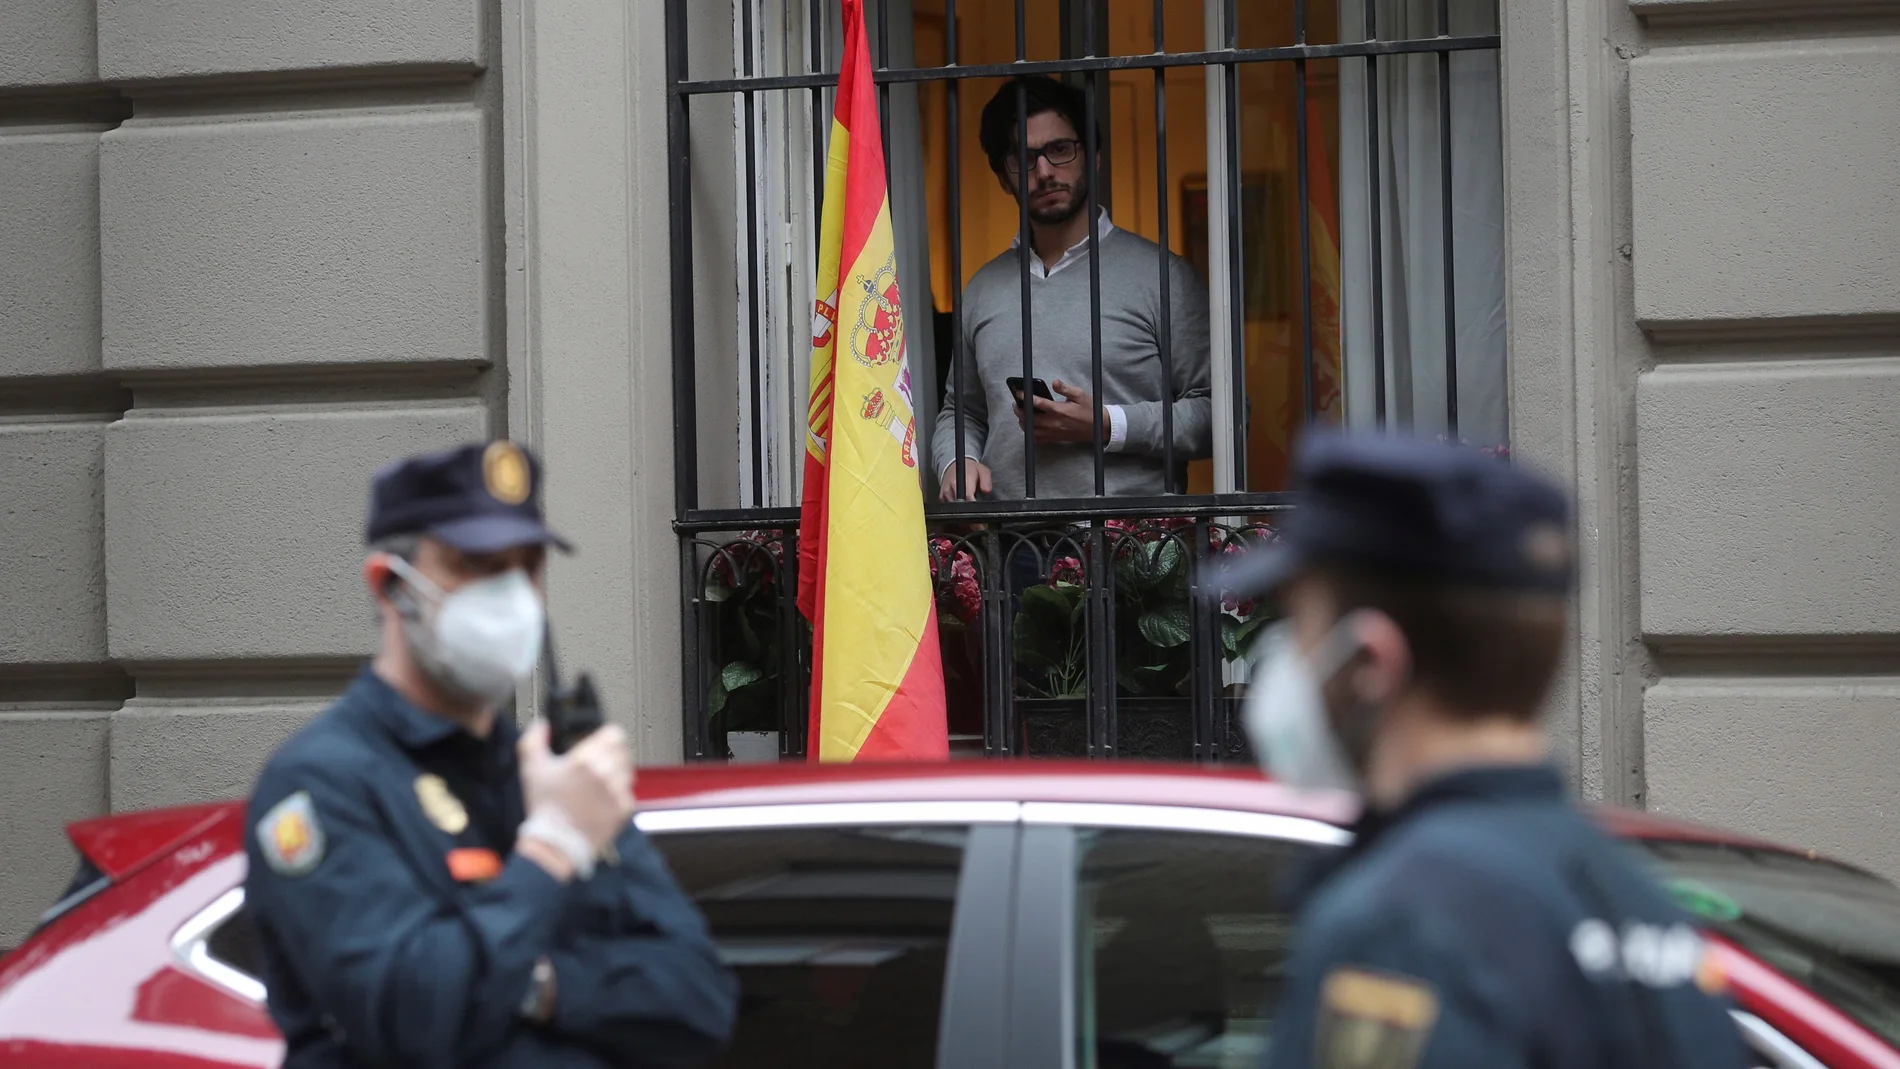 Vecinos del madrileño barrio de Salamanca se manifiestan contra el Gobierno, vigilados por un fuerte dispositivo policial, por su gestión en la crisis del coronavirus, este jueves en Madrid.